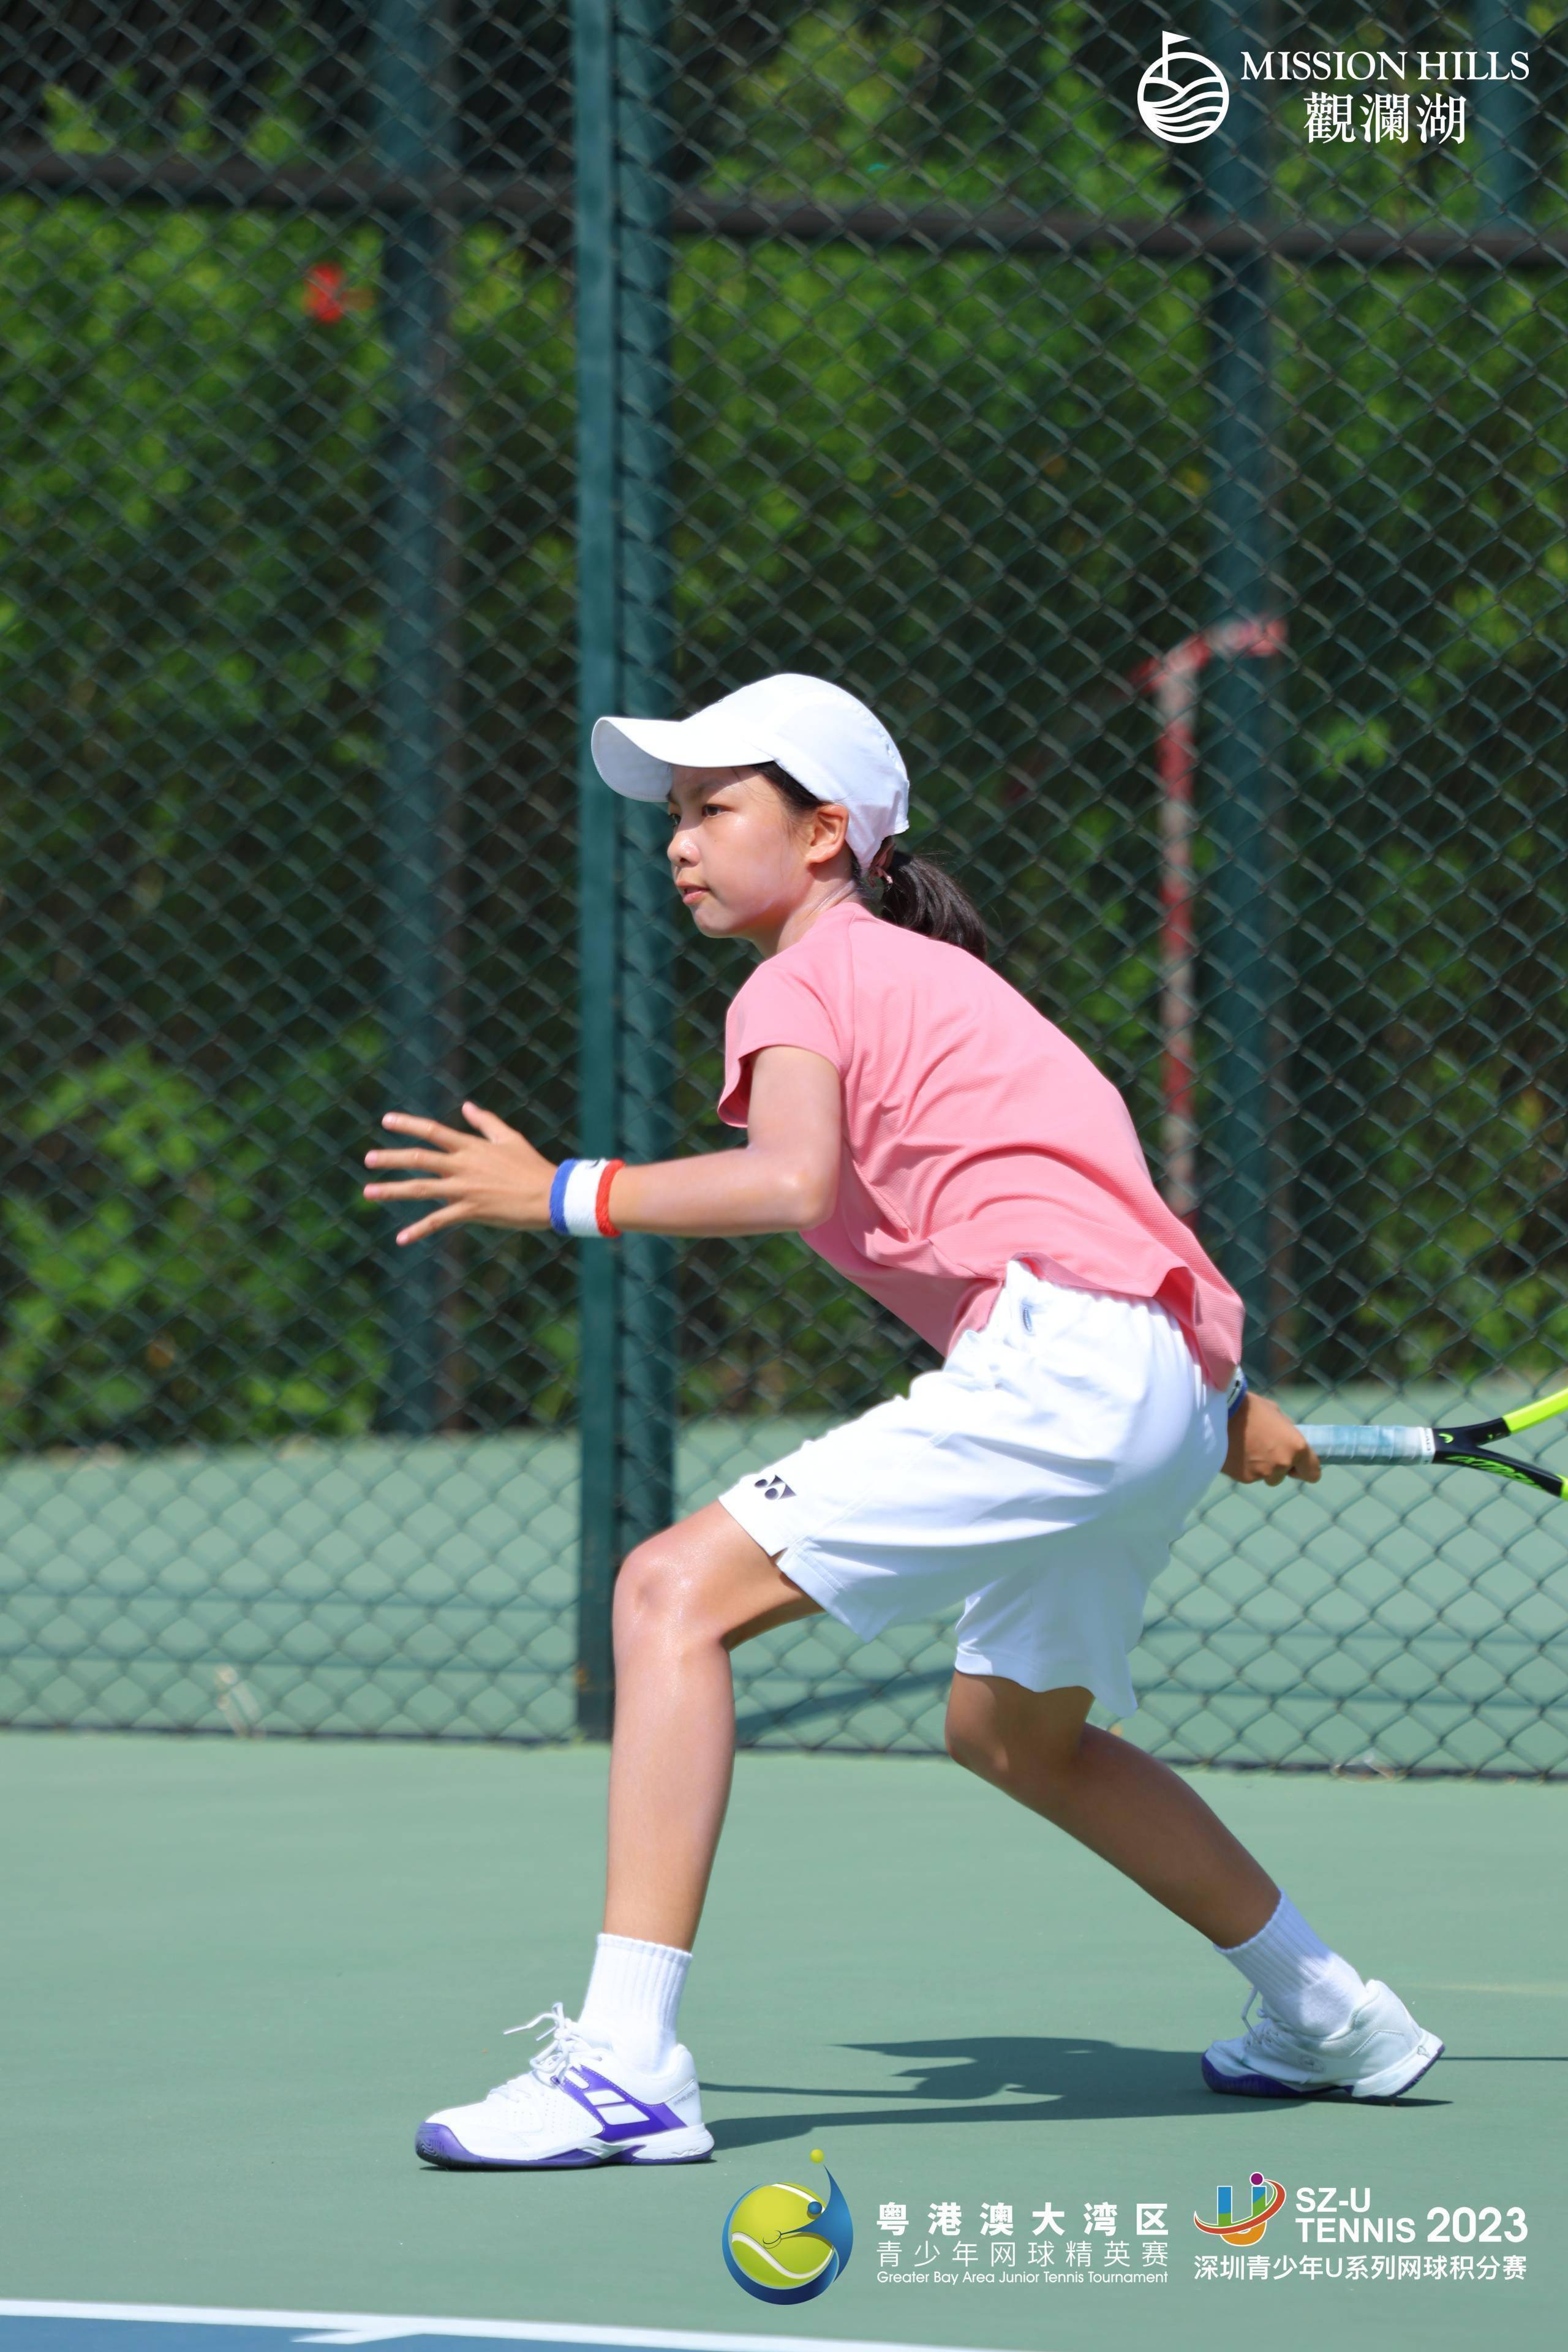 网球:粤港澳大湾区青少年网球精英赛落幕网球，168名球手入围总决赛